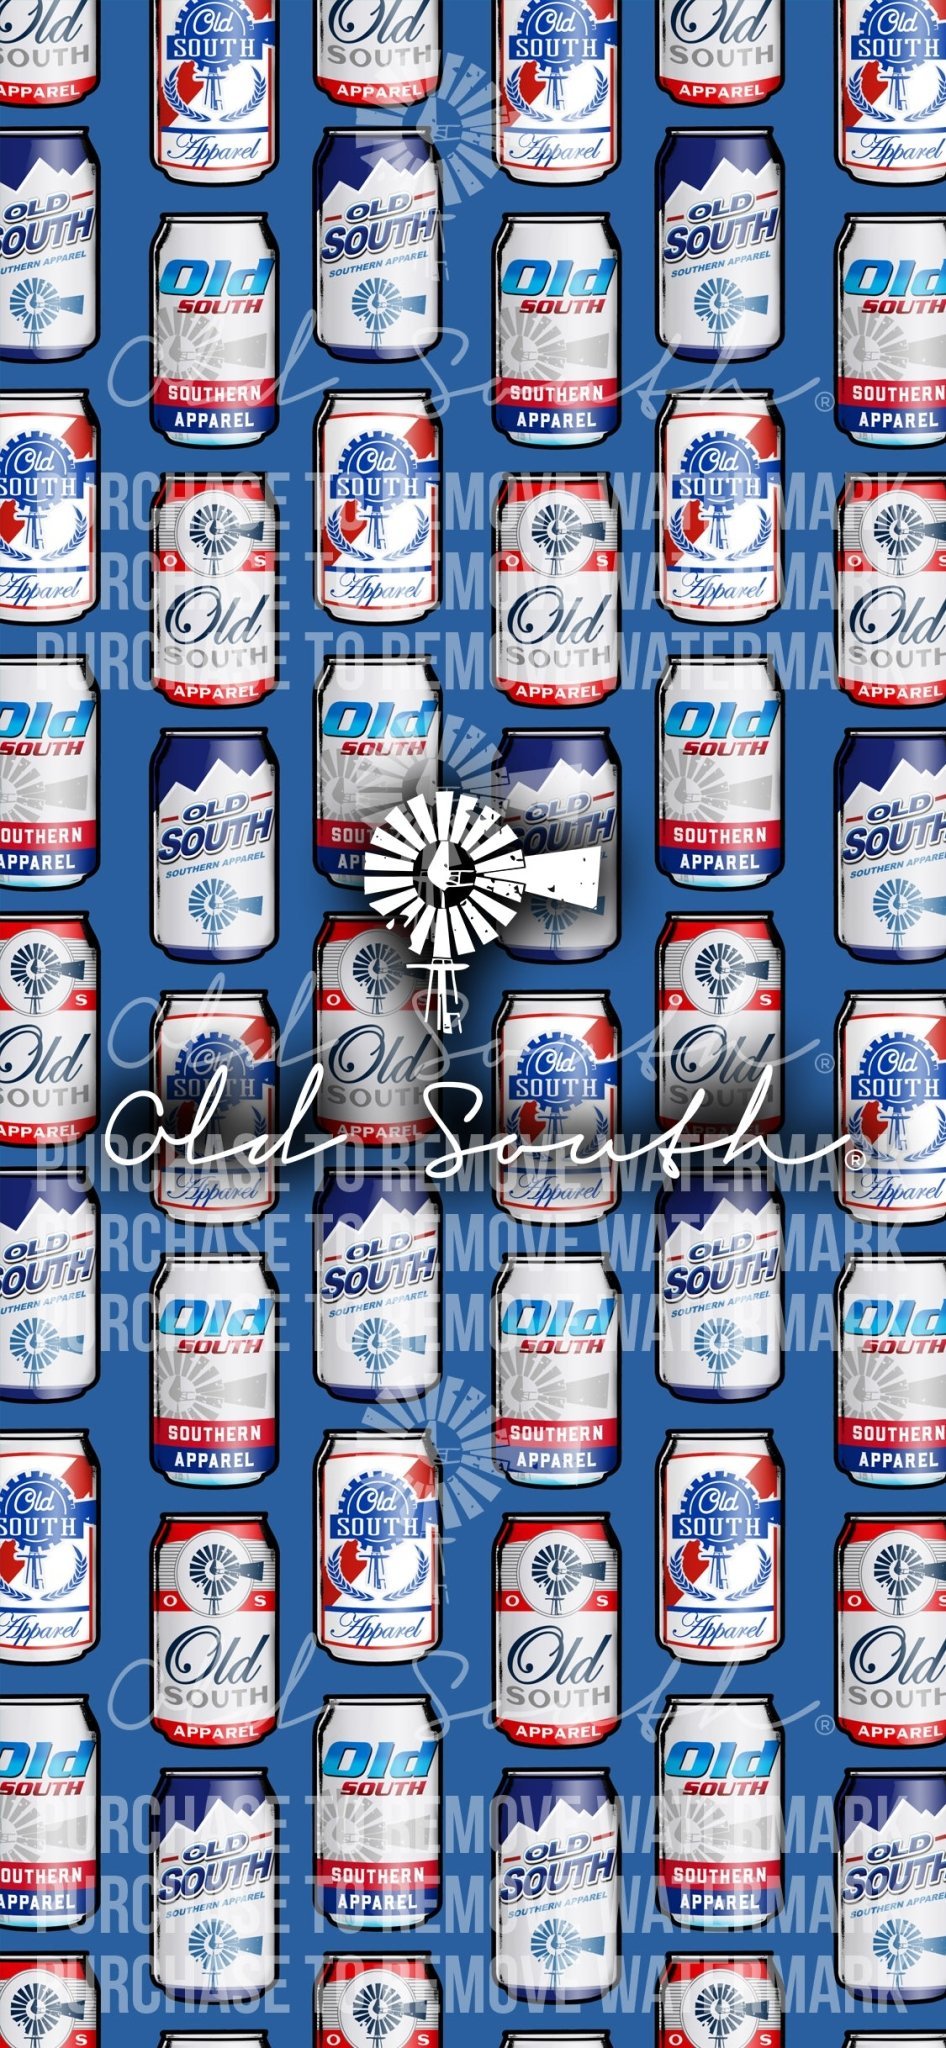 Beer Me - Digital Phone Downloadable Wallpaper